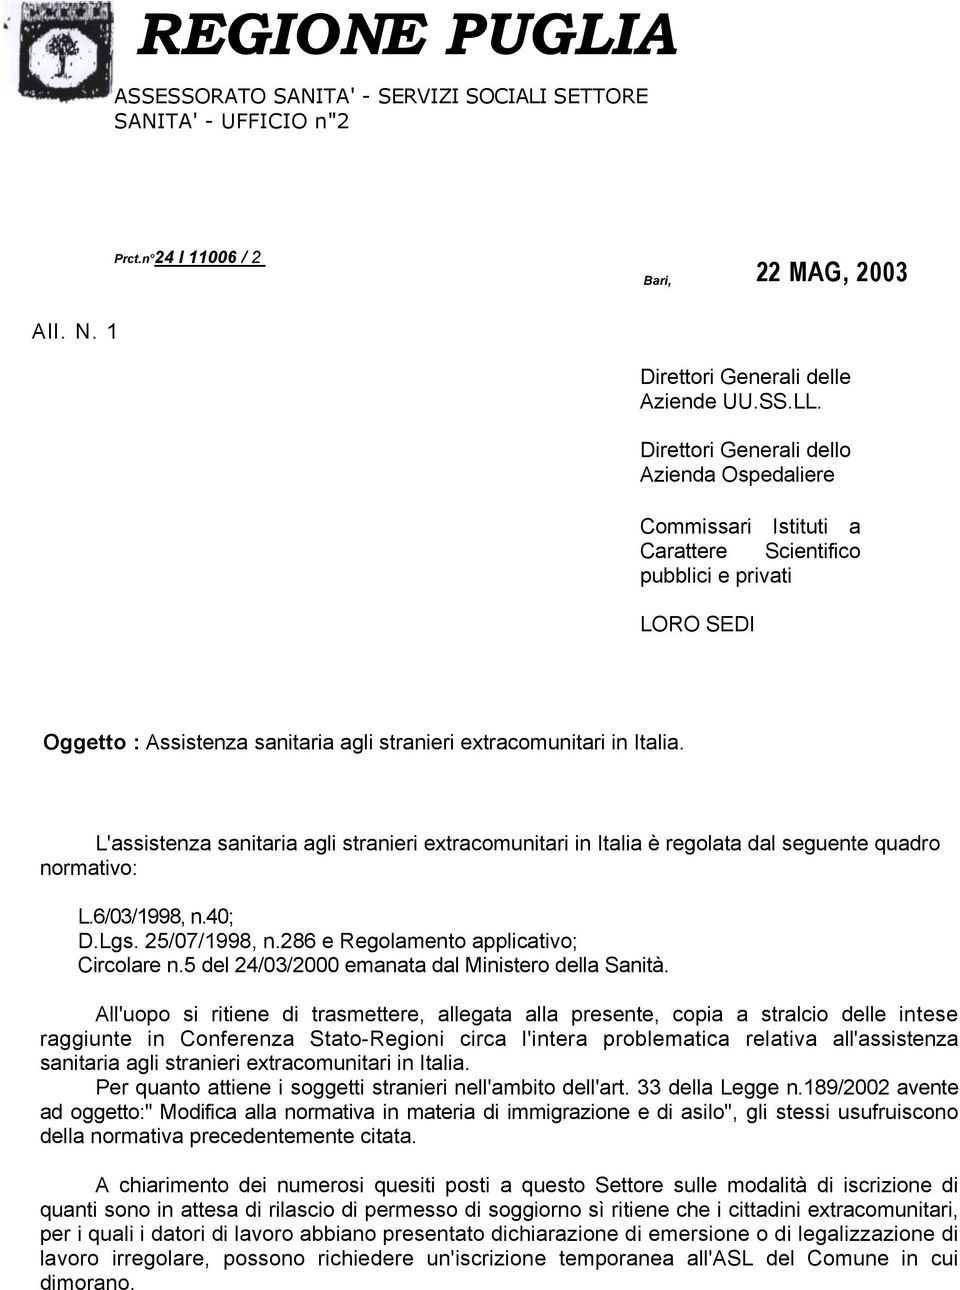 L'assistenza sanitaria agli stranieri extracomunitari in Italia è regolata dal seguente quadro normativo: L.6/03/1998, n.40; D.Lgs. 25/07/1998, n.286 e Regolamento applicativo; Circolare n.